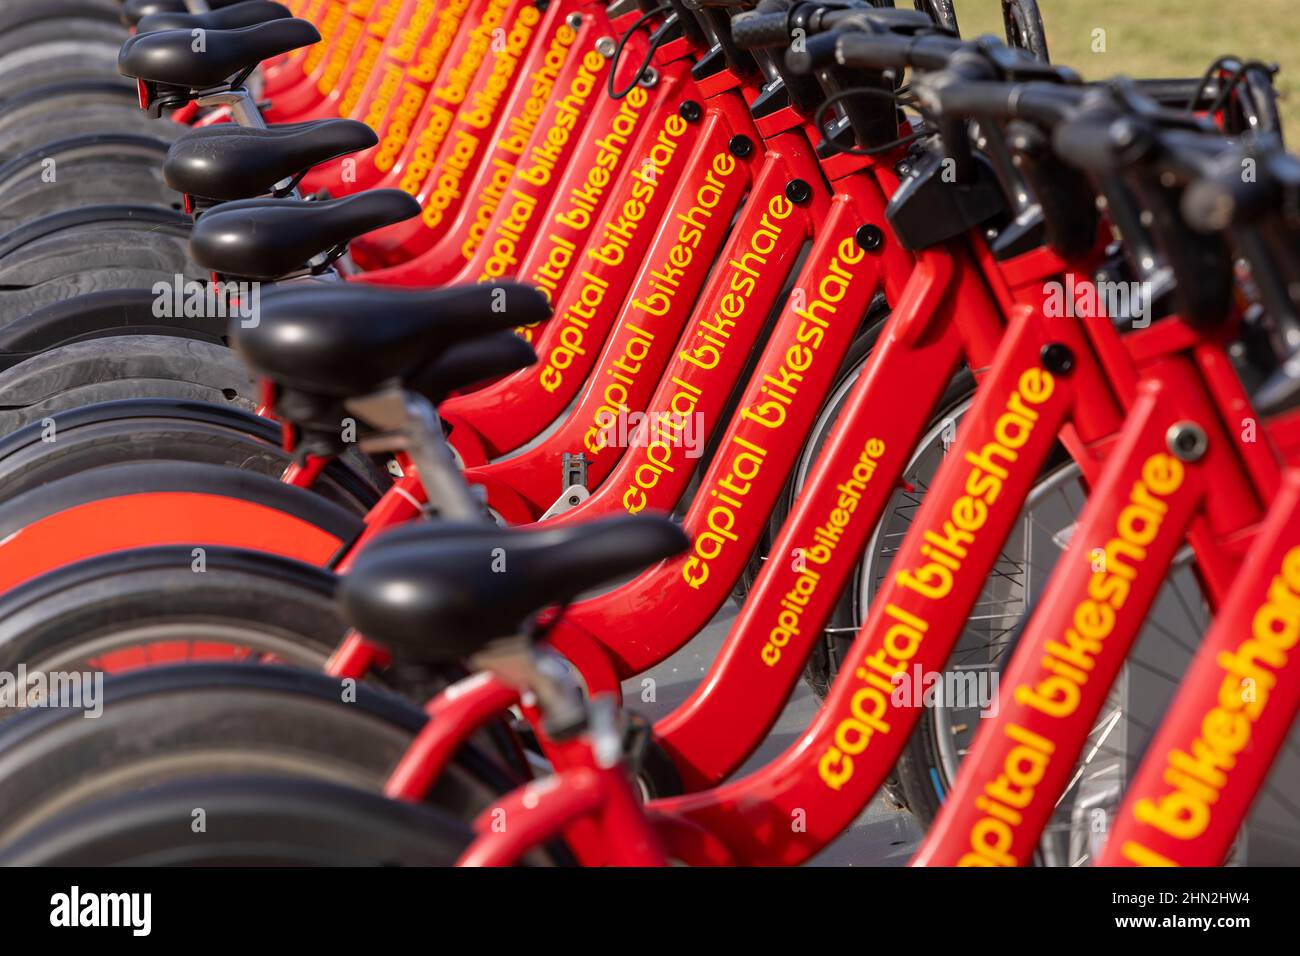 WASHINGTON, DC, Estados Unidos - Baterero de Capital Bikeshare bicicletas listo para alquilar. Foto de stock